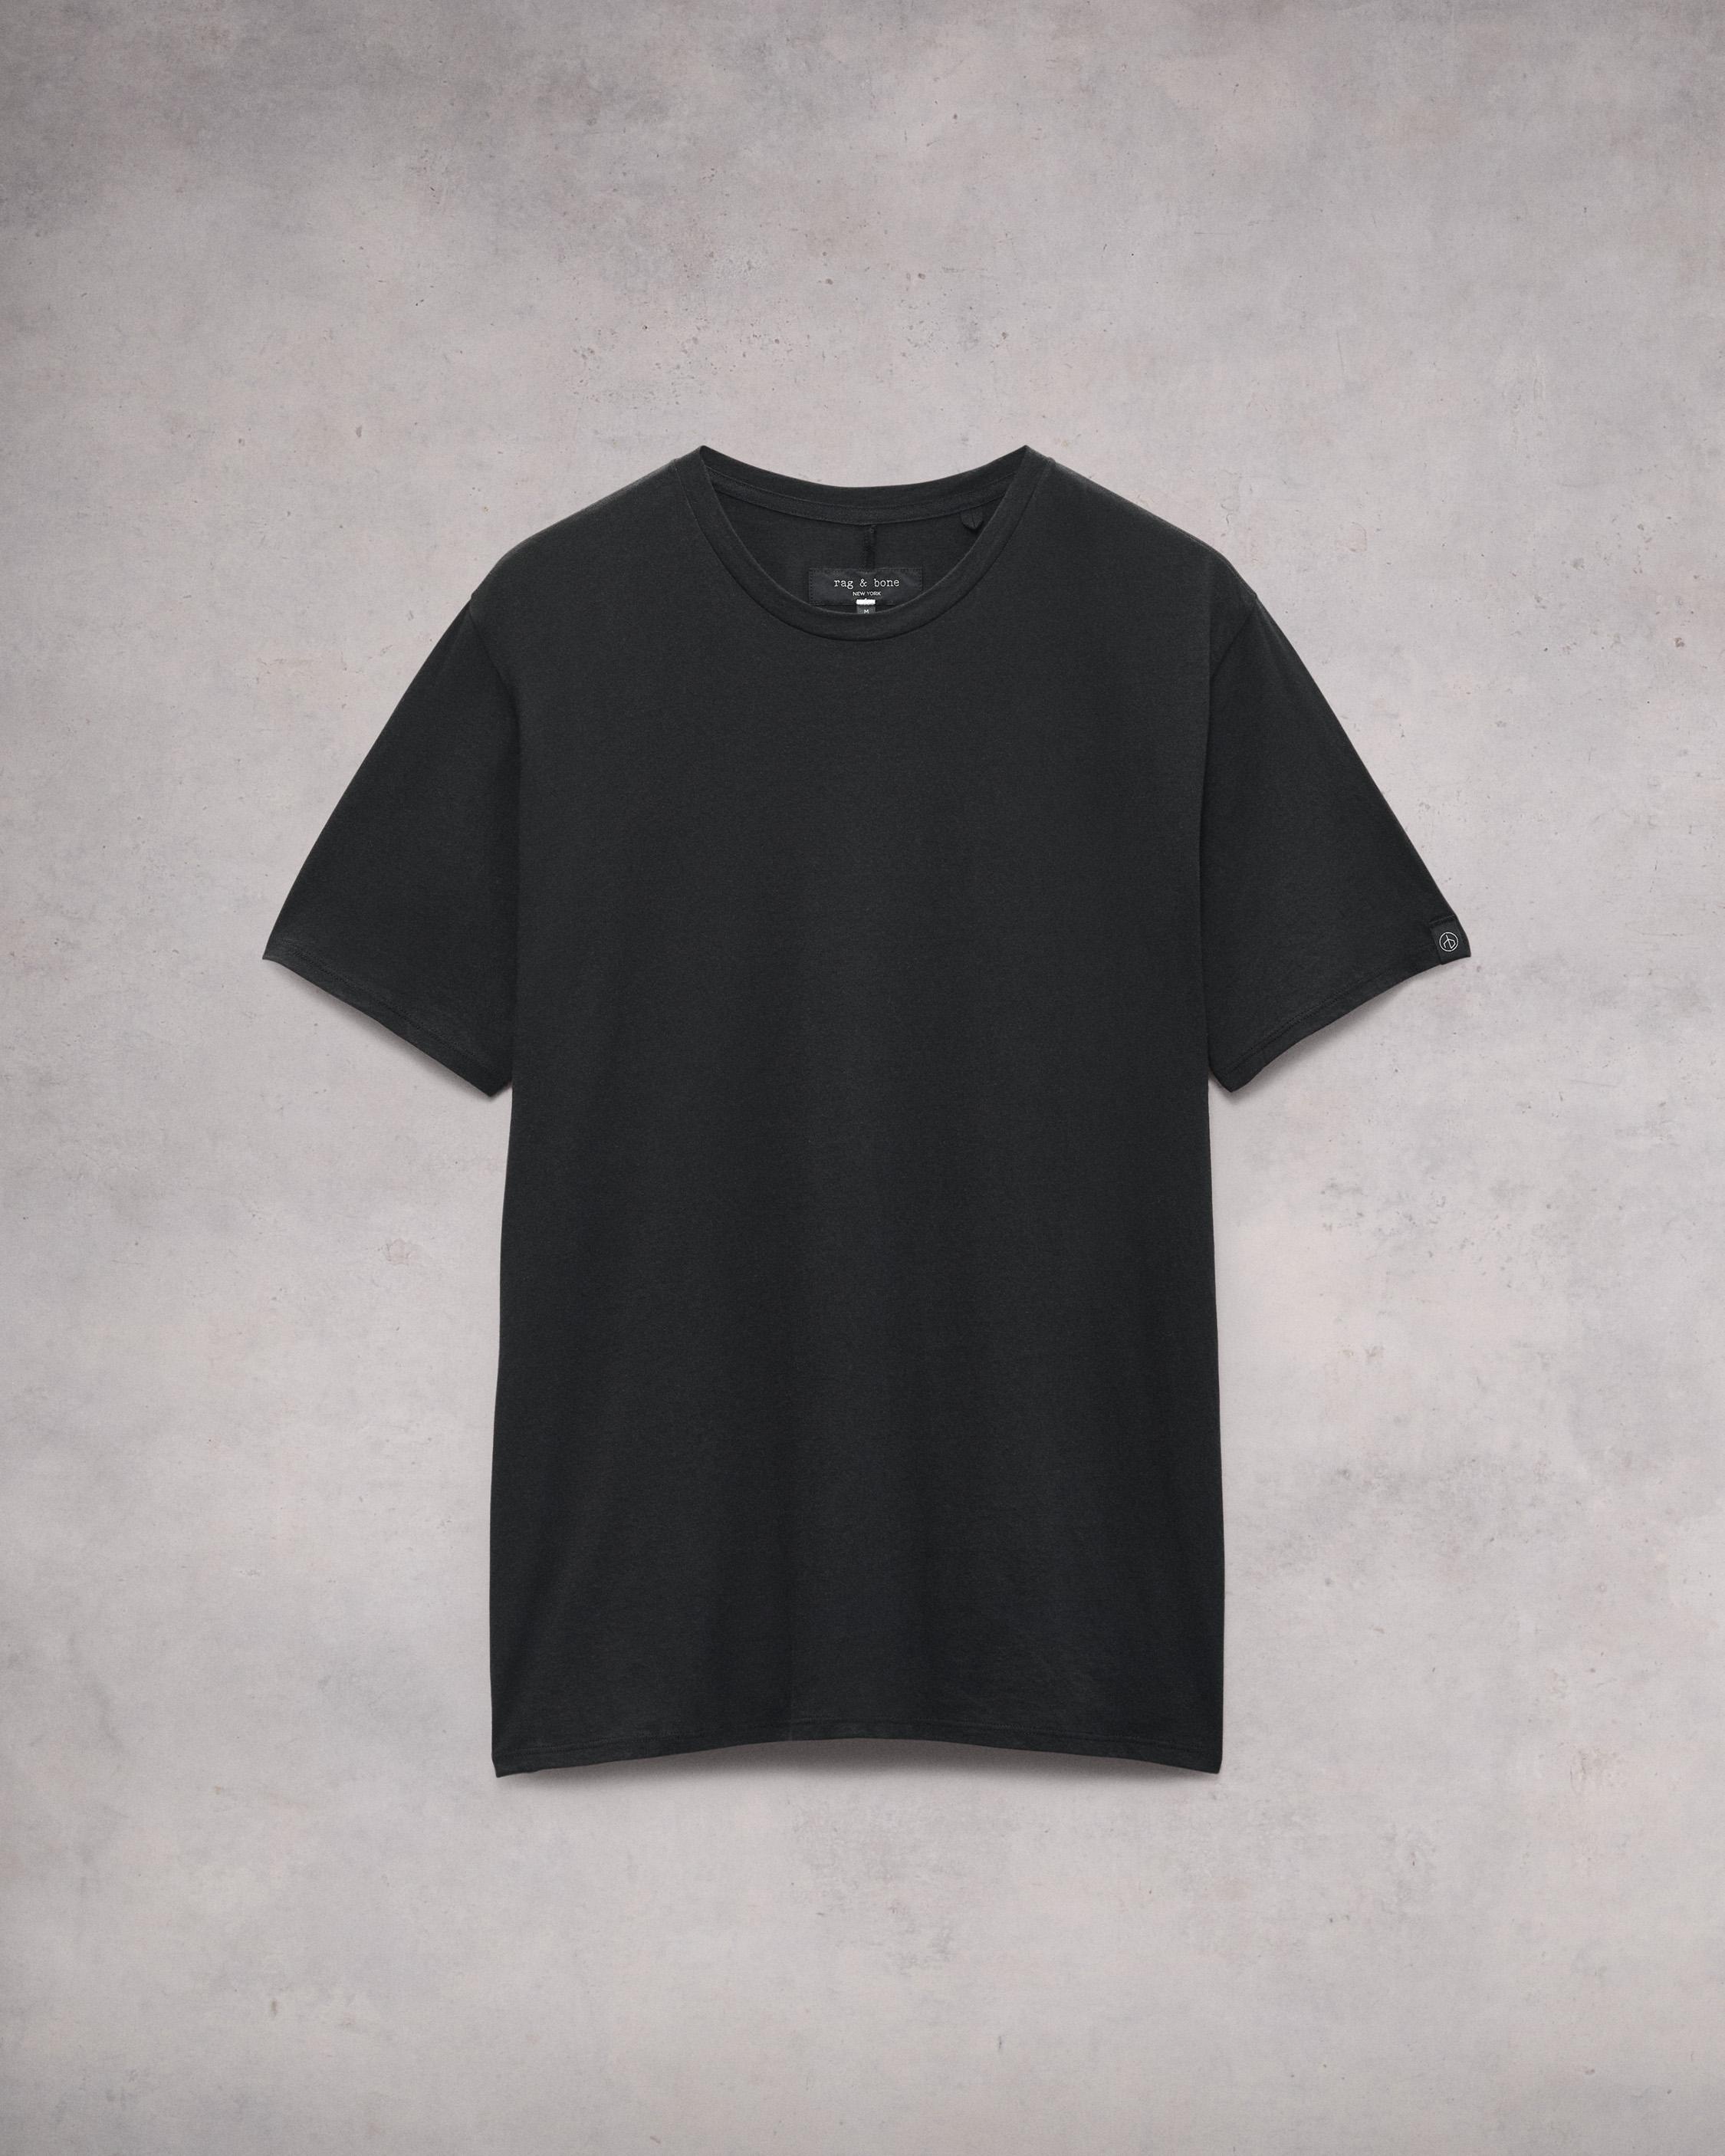 Zero Gravity Classic Tee
Cotton T-Shirt - 1